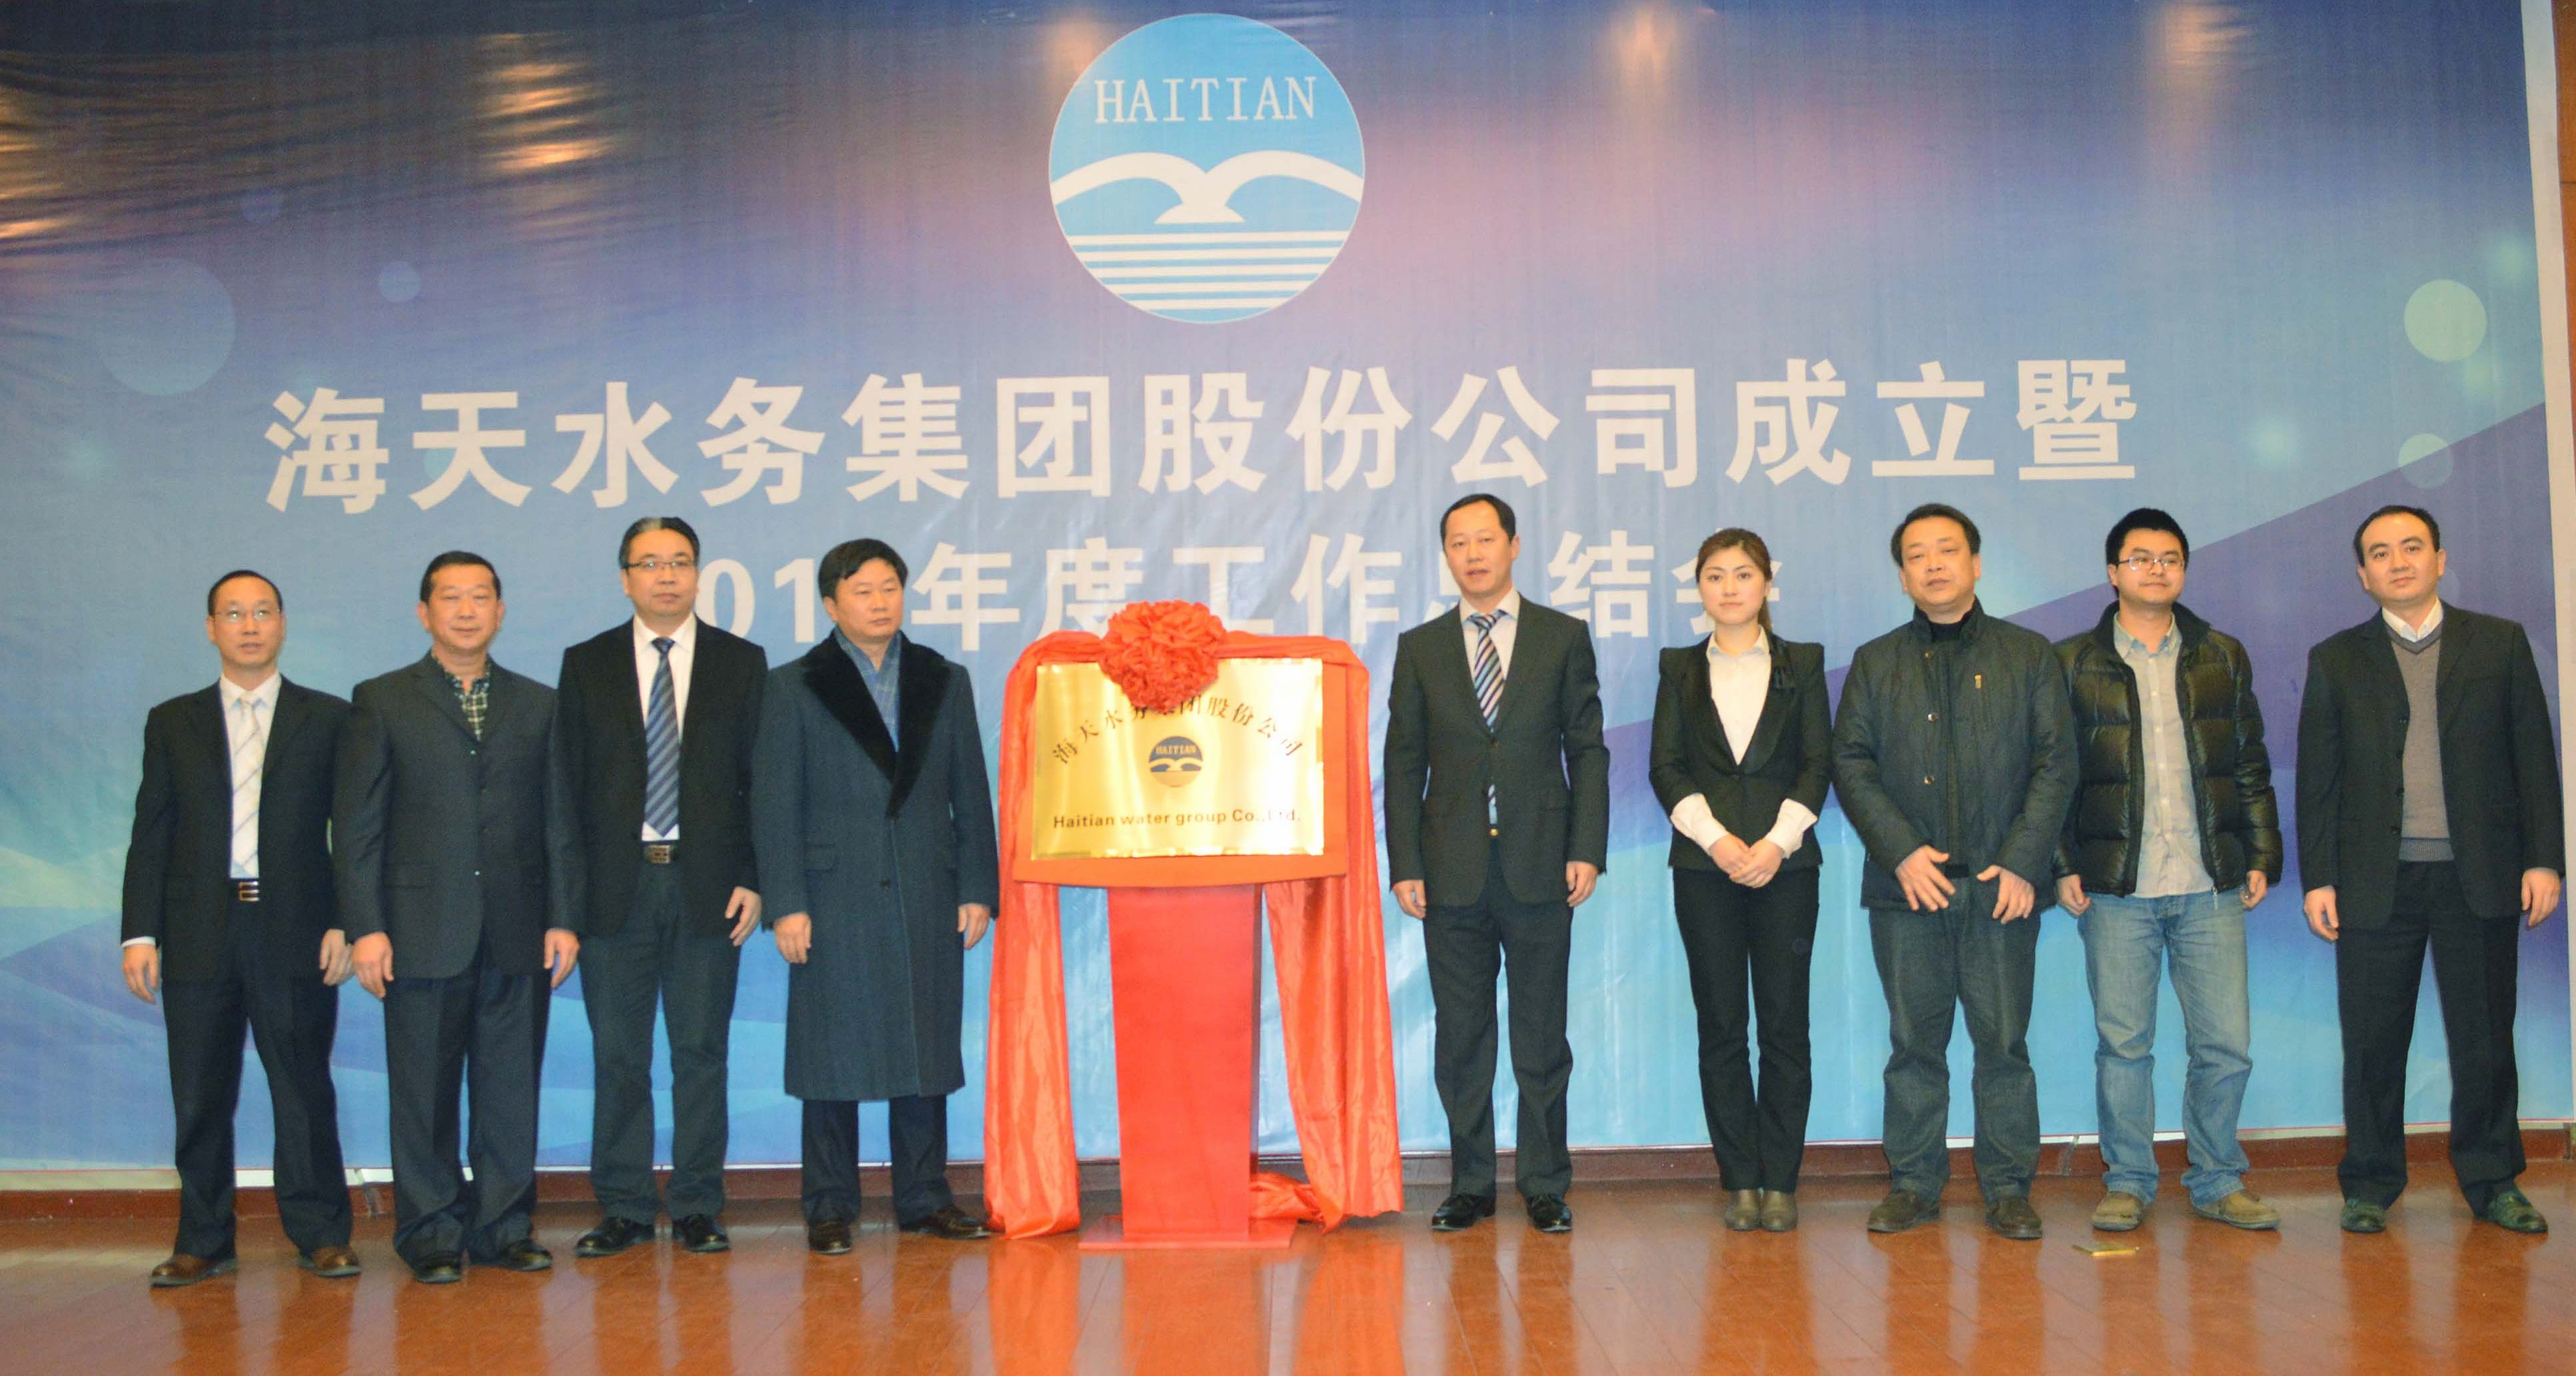 海天水务集团股份公司成立大会暨揭仪式在蓉隆重举行